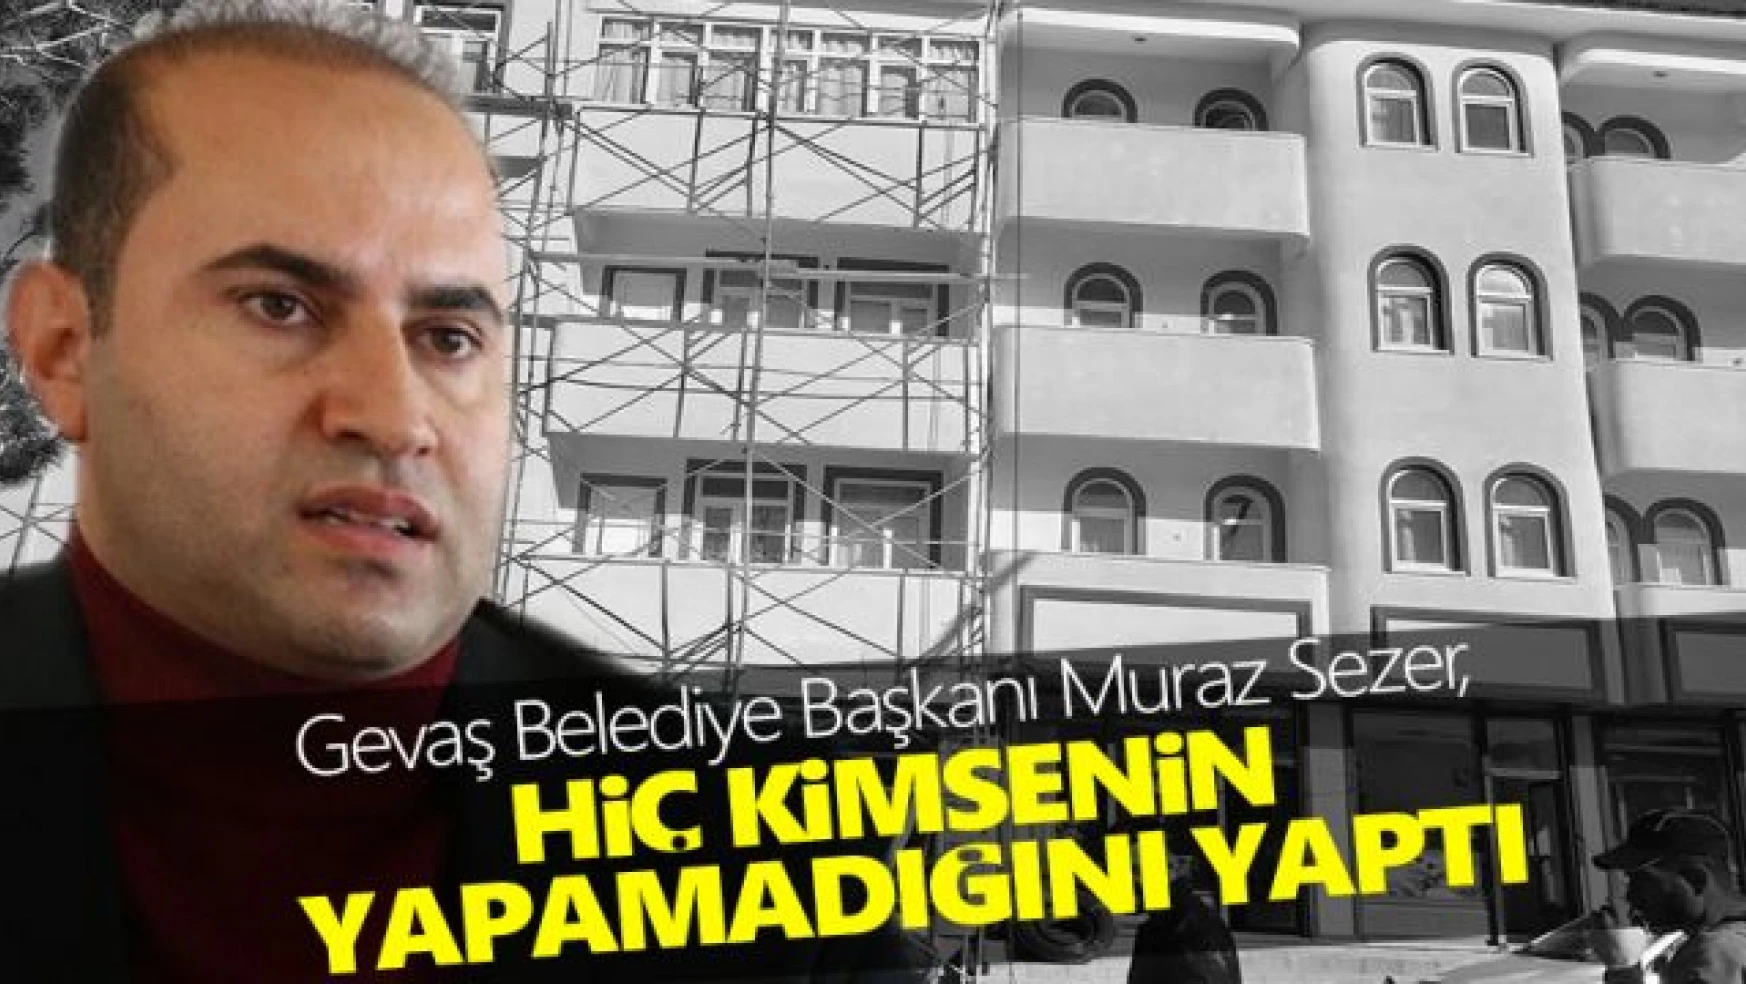 Gevaş Belediye Başkanı Murat Sezer'in hizmetleri takdir topluyor